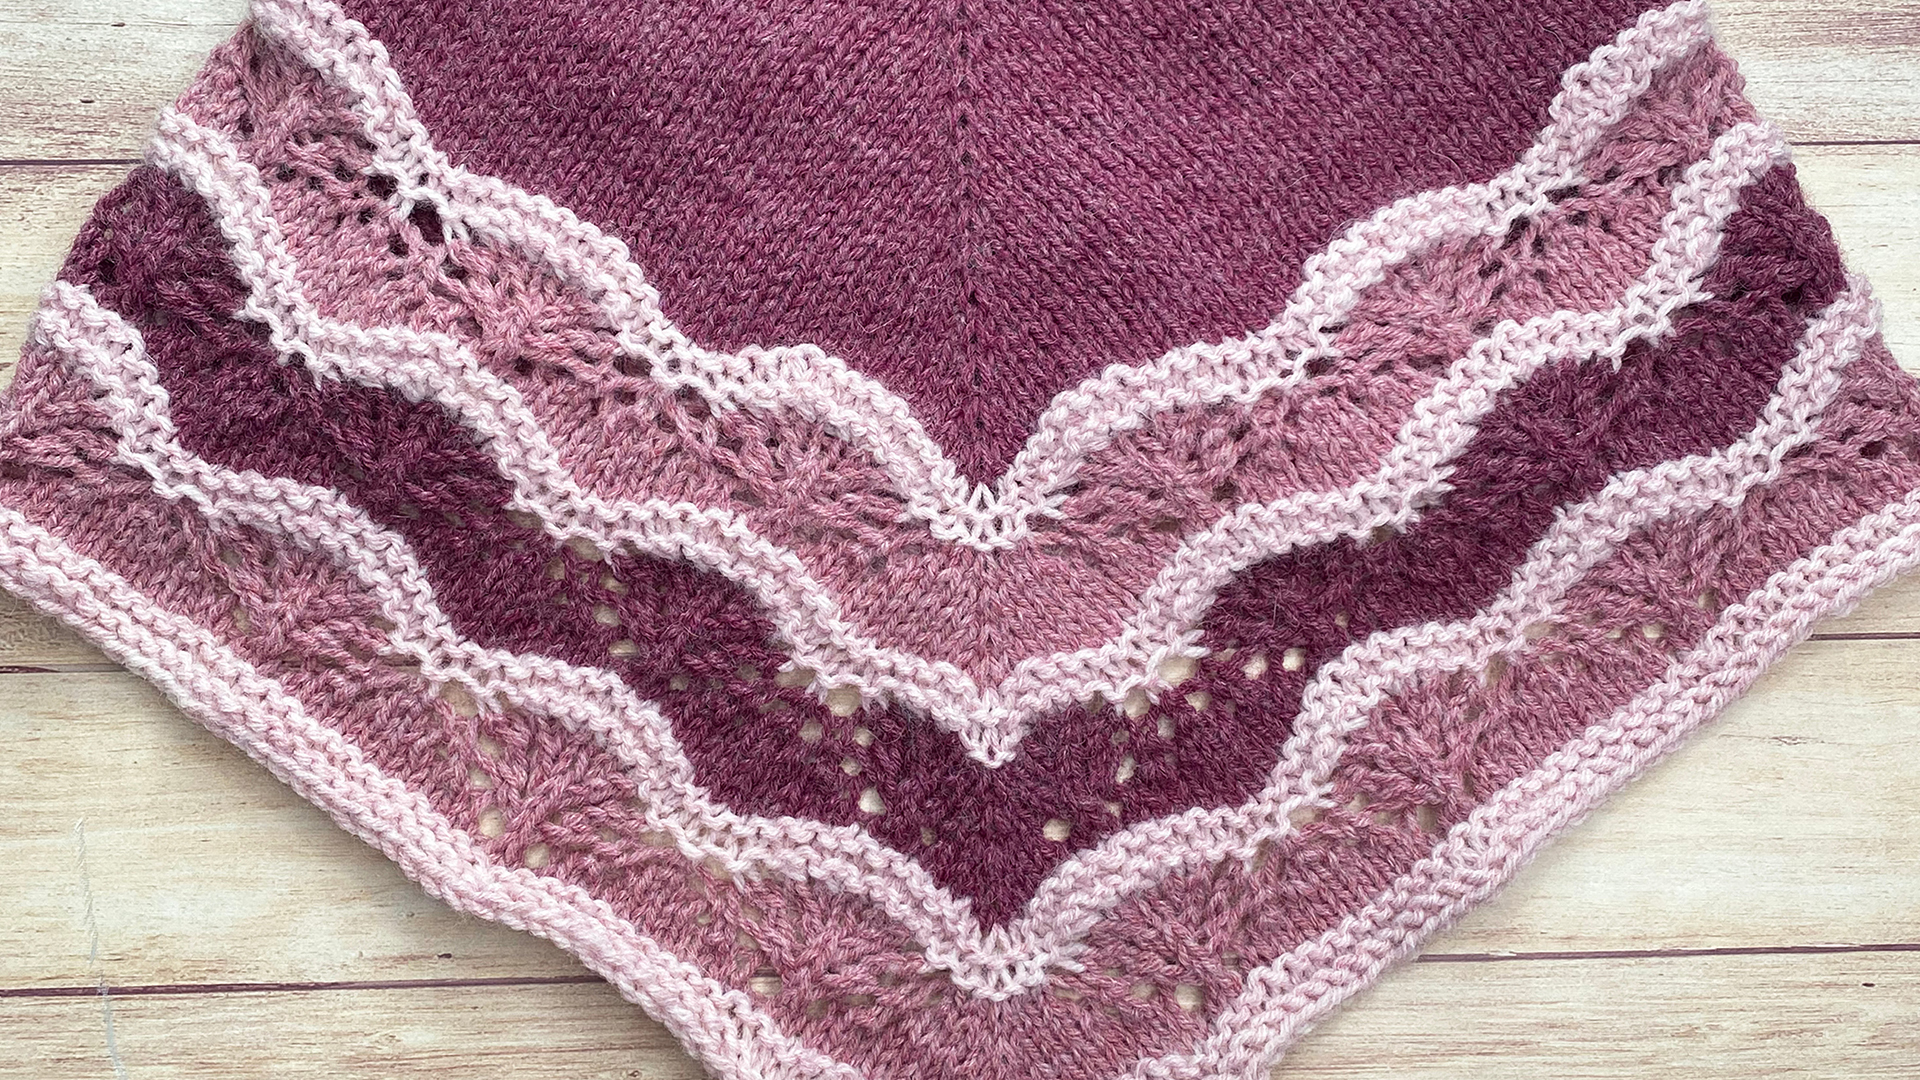 Free Knitting Pattern - Celine Cowlette